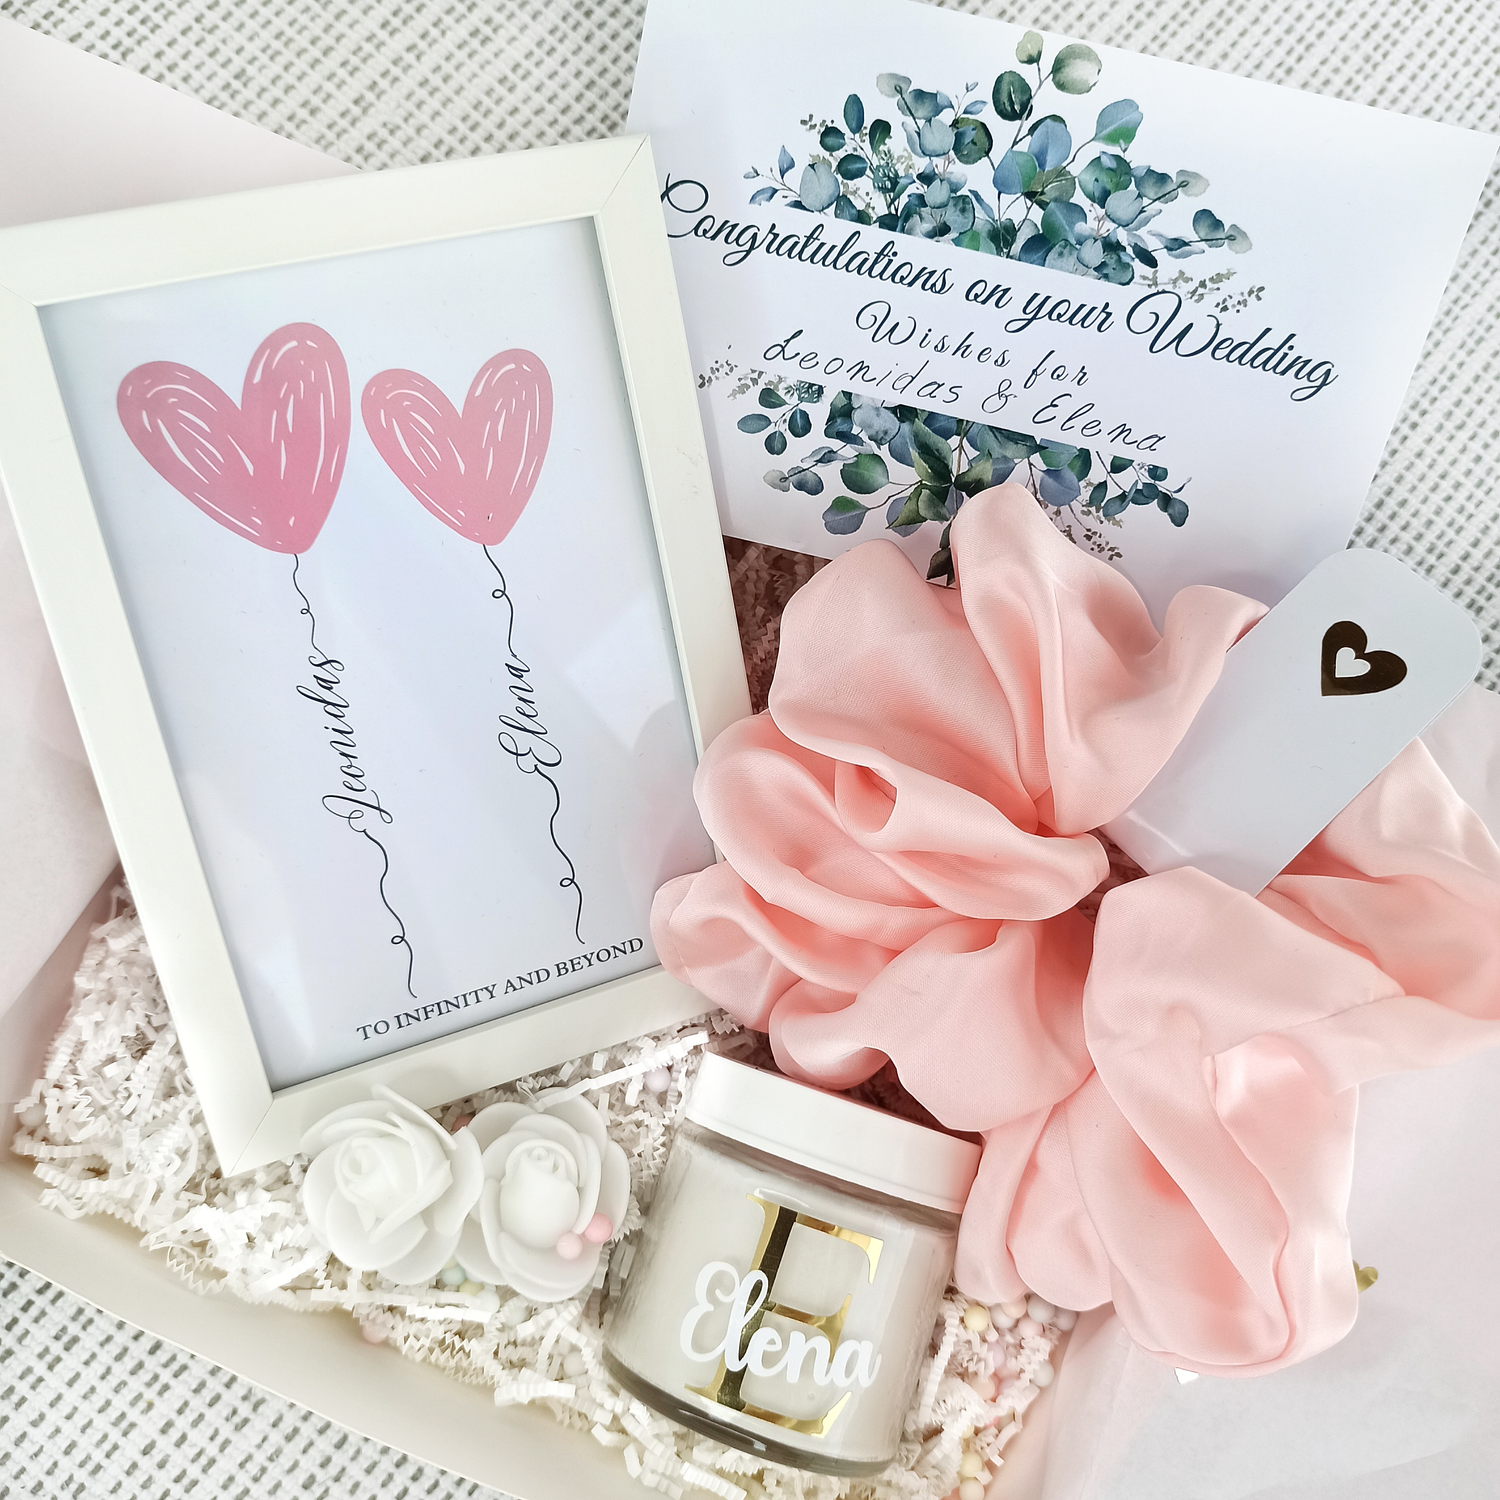 Δώρα με προσωποποίηση για τη μέλλουσα νύφη. Το κάθε δώρο αποτελείται από ένα personalized κουτί με το όνομα της νύφης και περιέχει προσωποποιημένα αντικείμενα/αξεσουάρ.